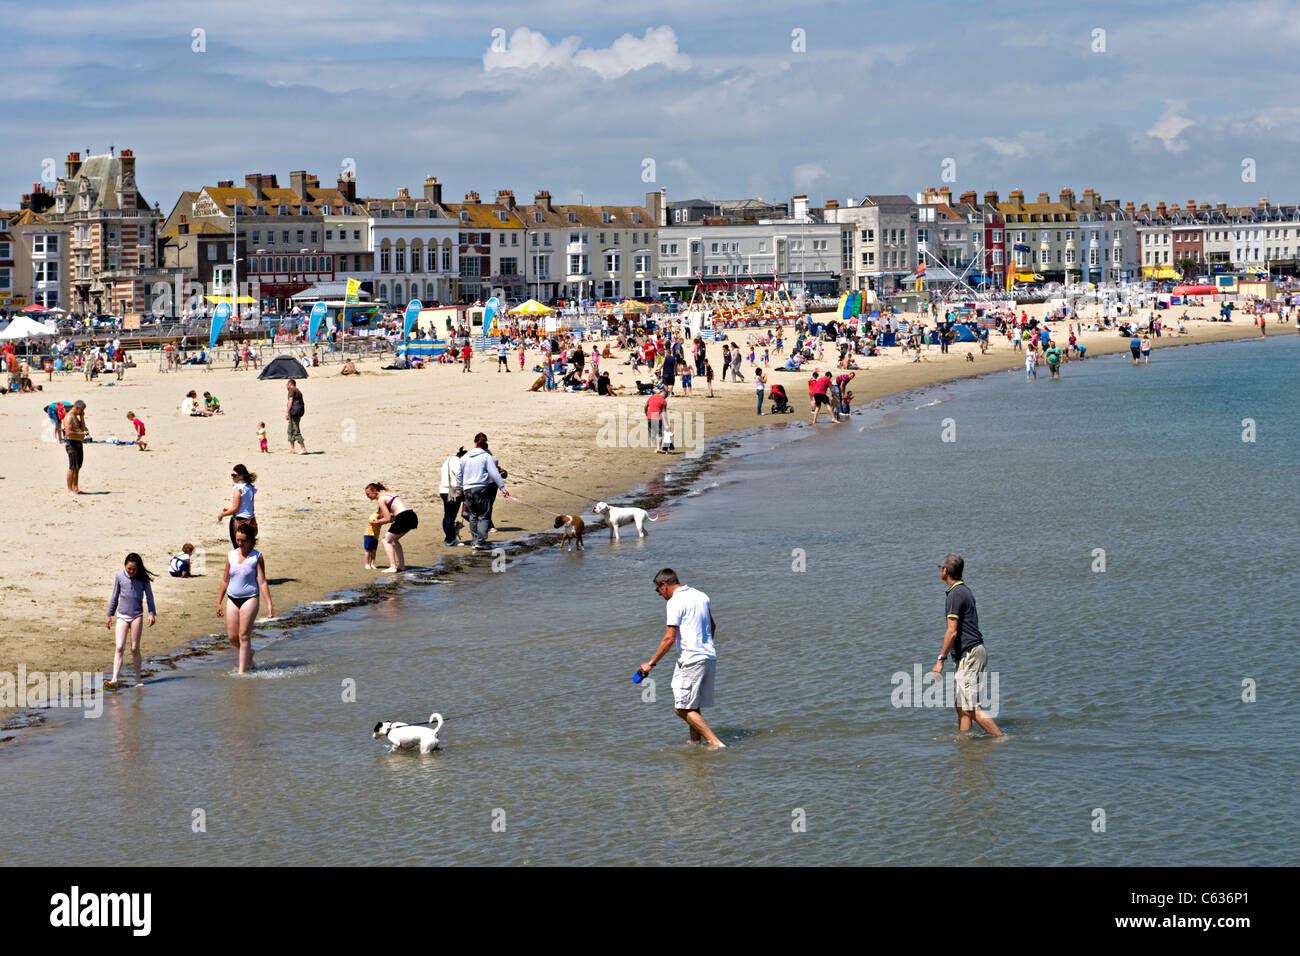 Weymouth Beach, Weymouth, UK Stock Photo